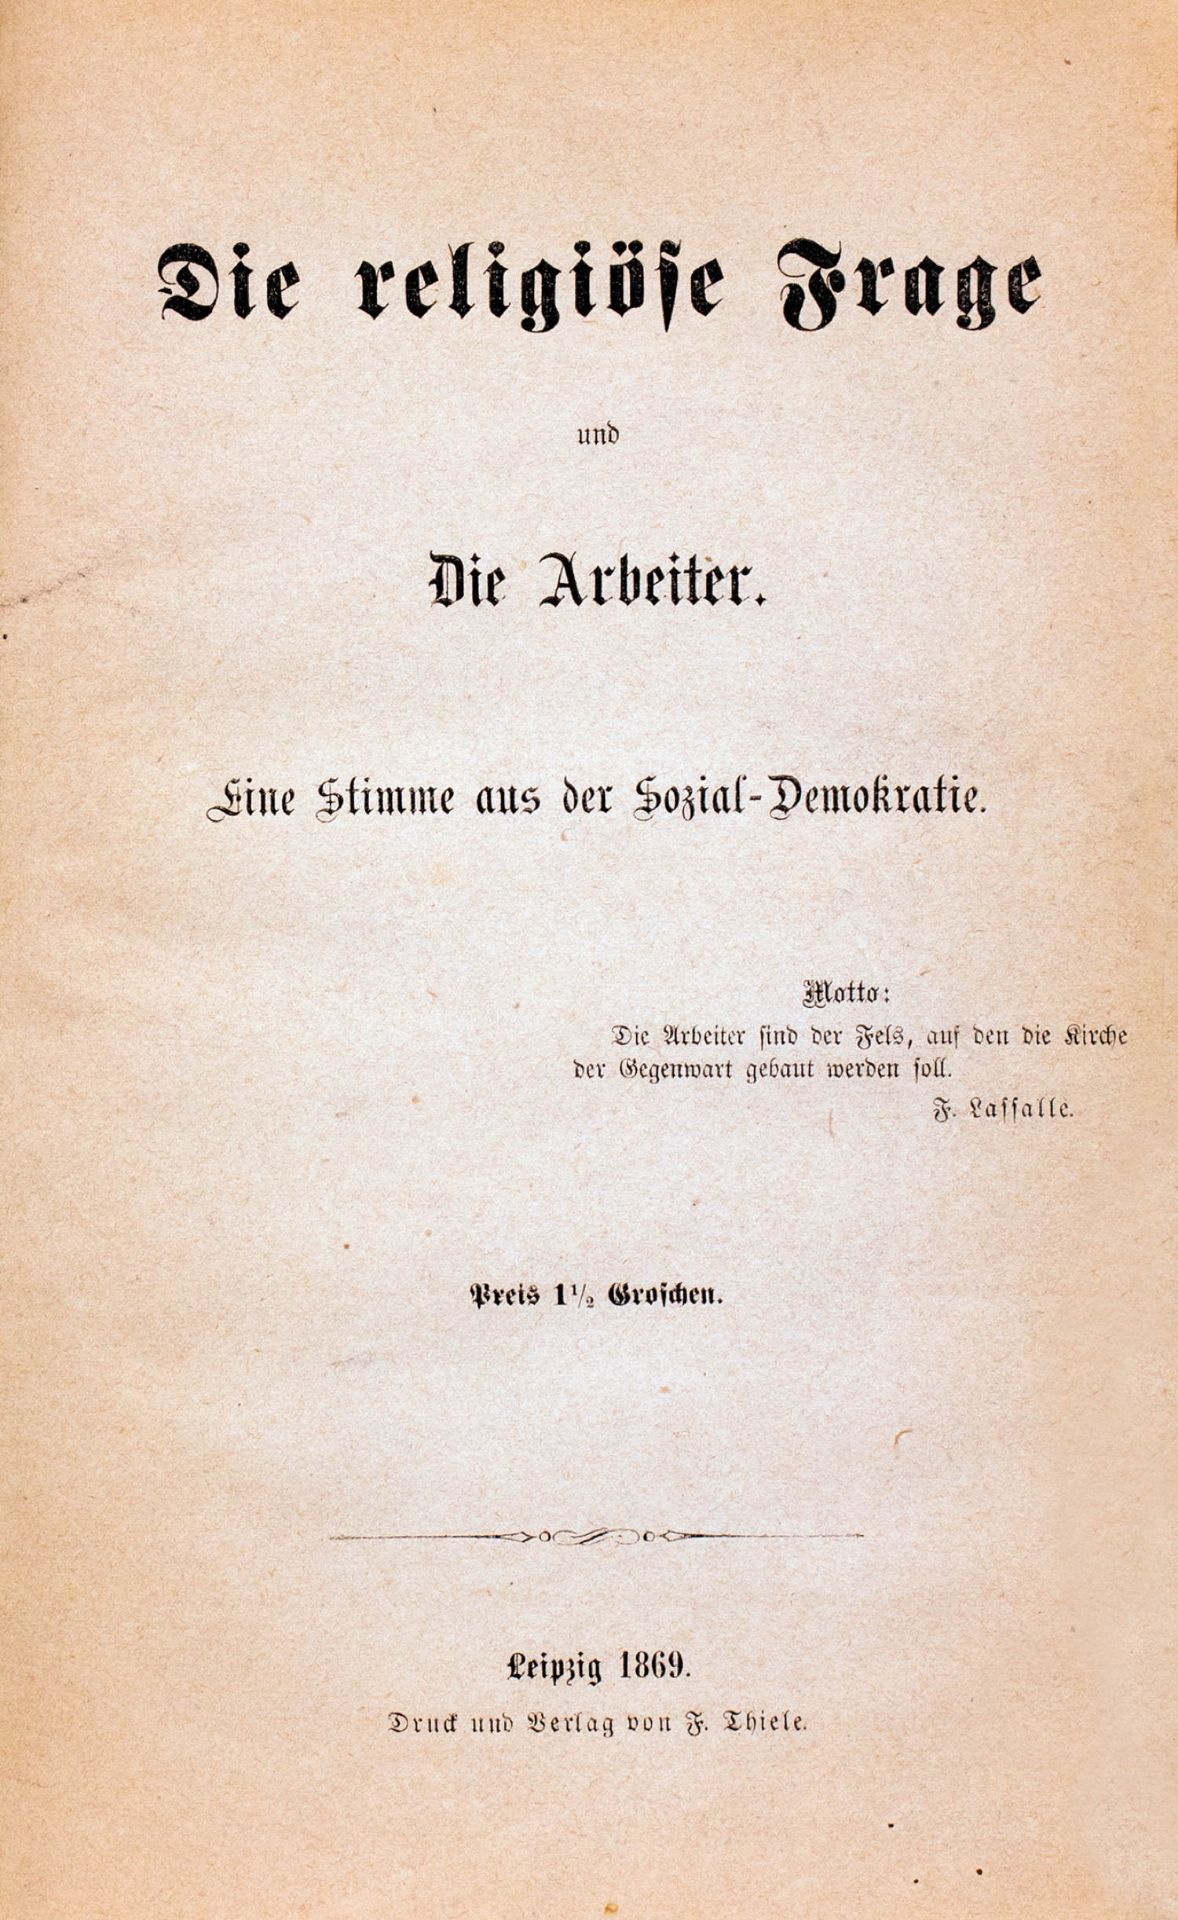 Deutsche Sozialdemokratie - Sammelband aus dem Gründungsjahr. - Image 2 of 4